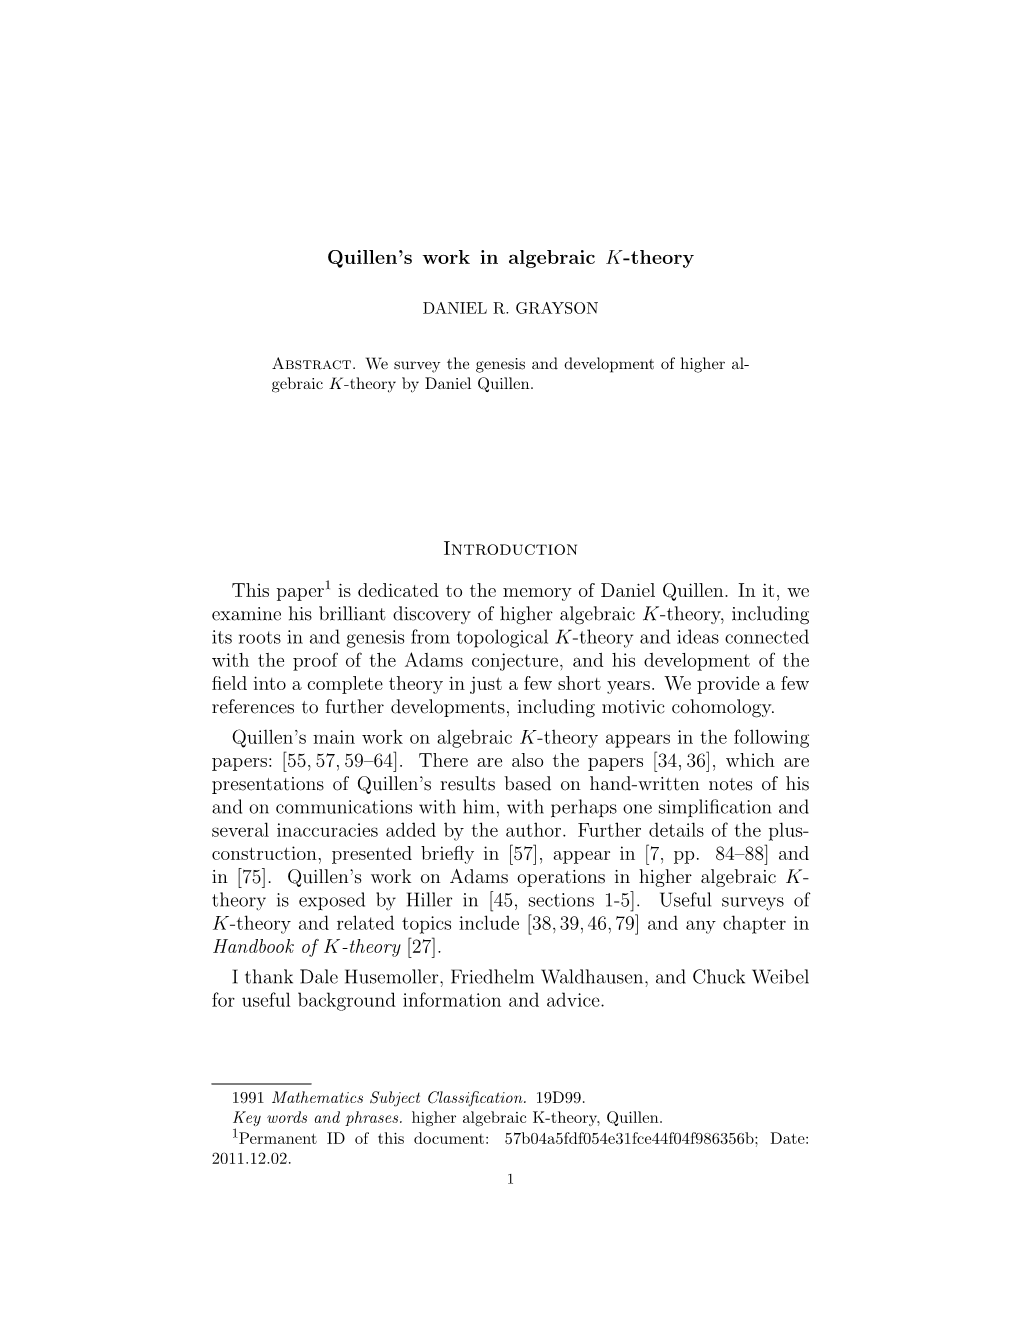 Quillen's Work in Algebraic K-Theory